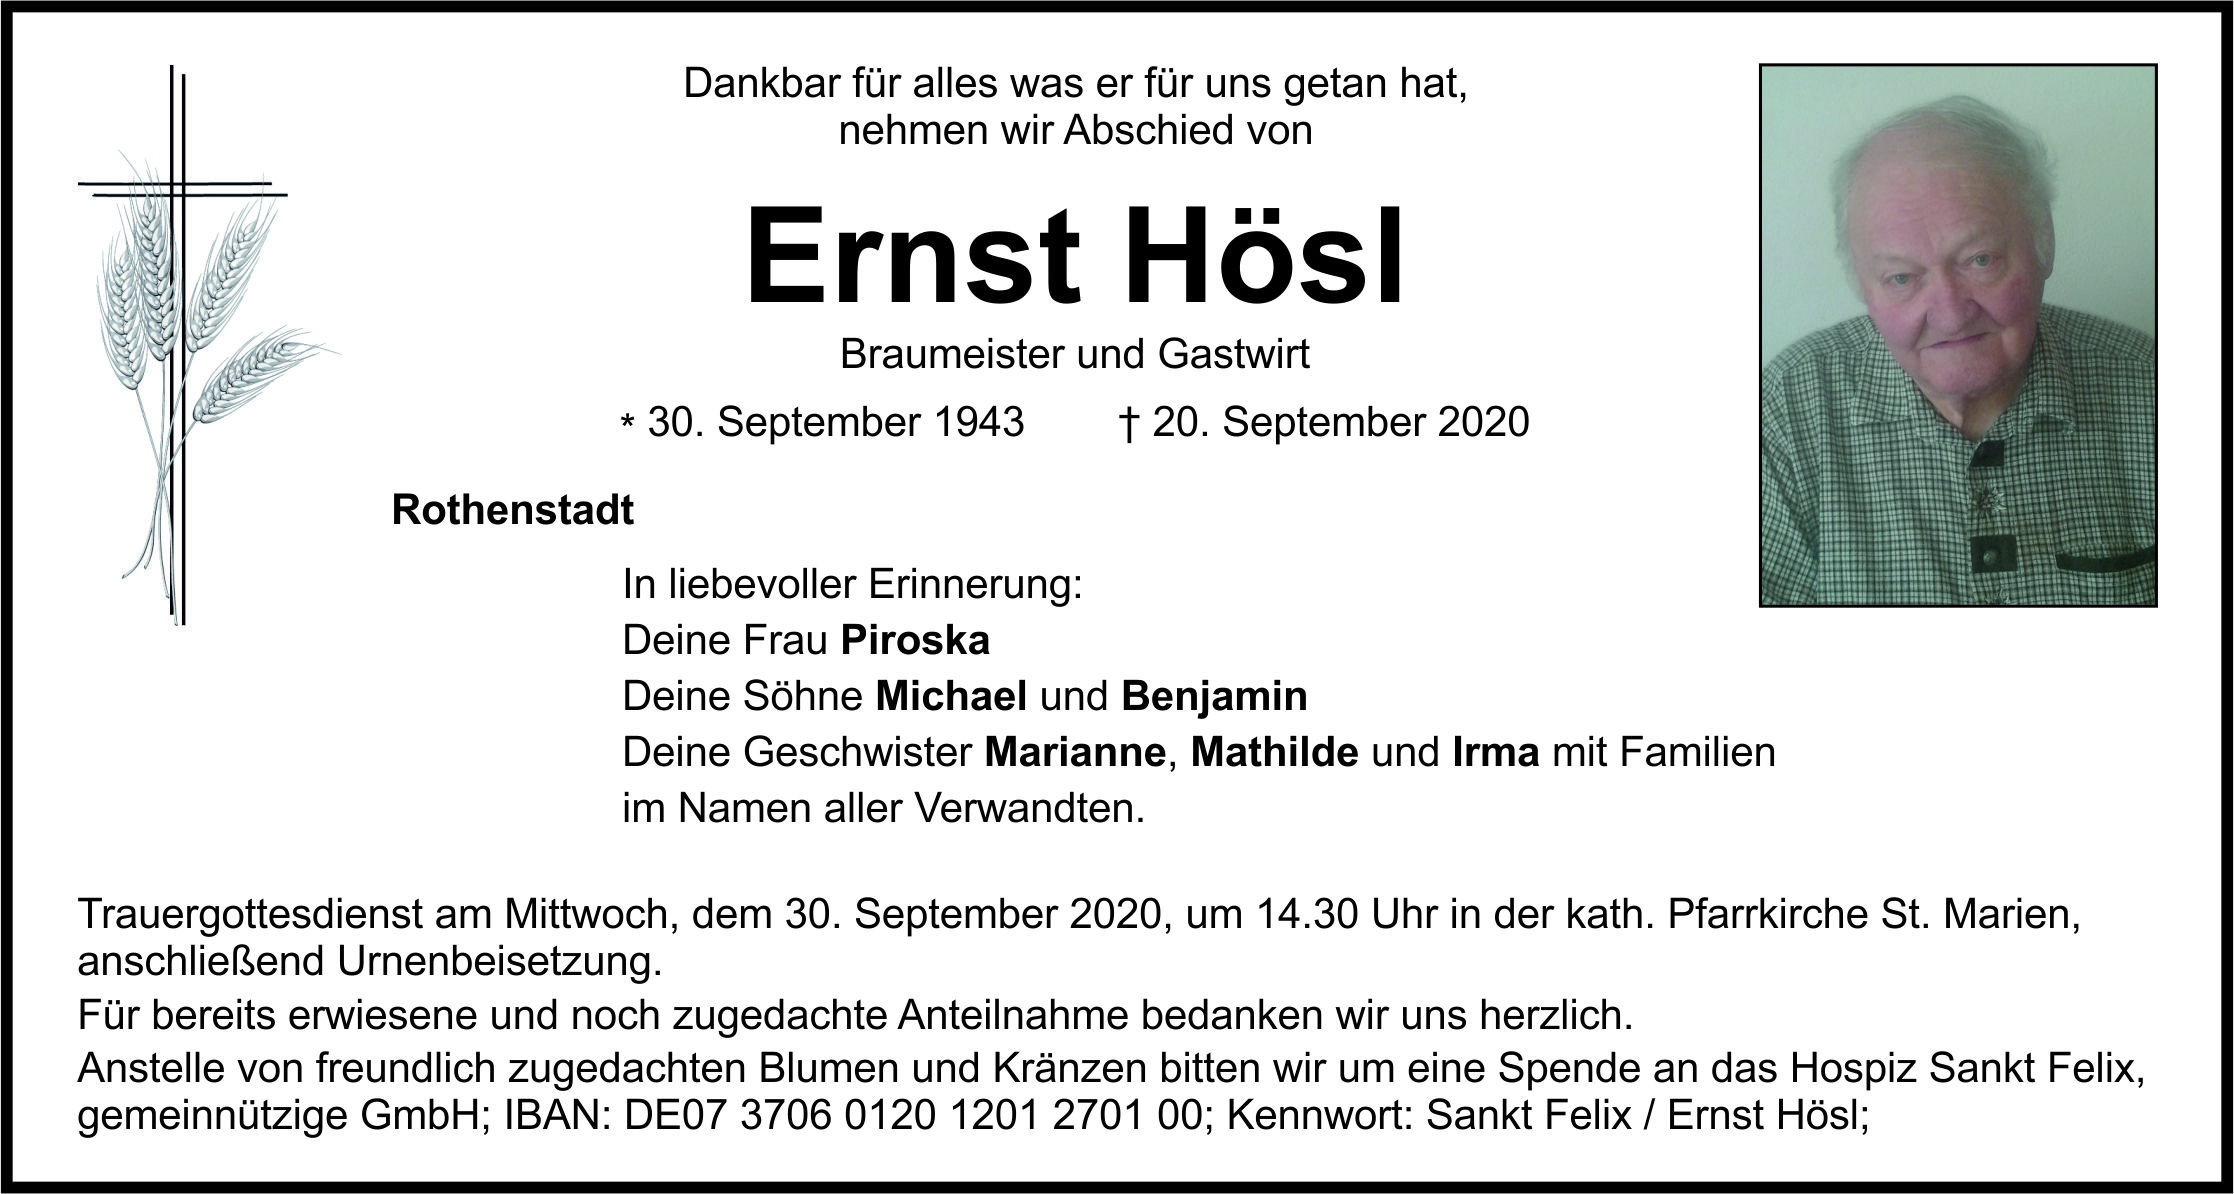 Traueranzeige Ernst Hösl, Rothenstadt